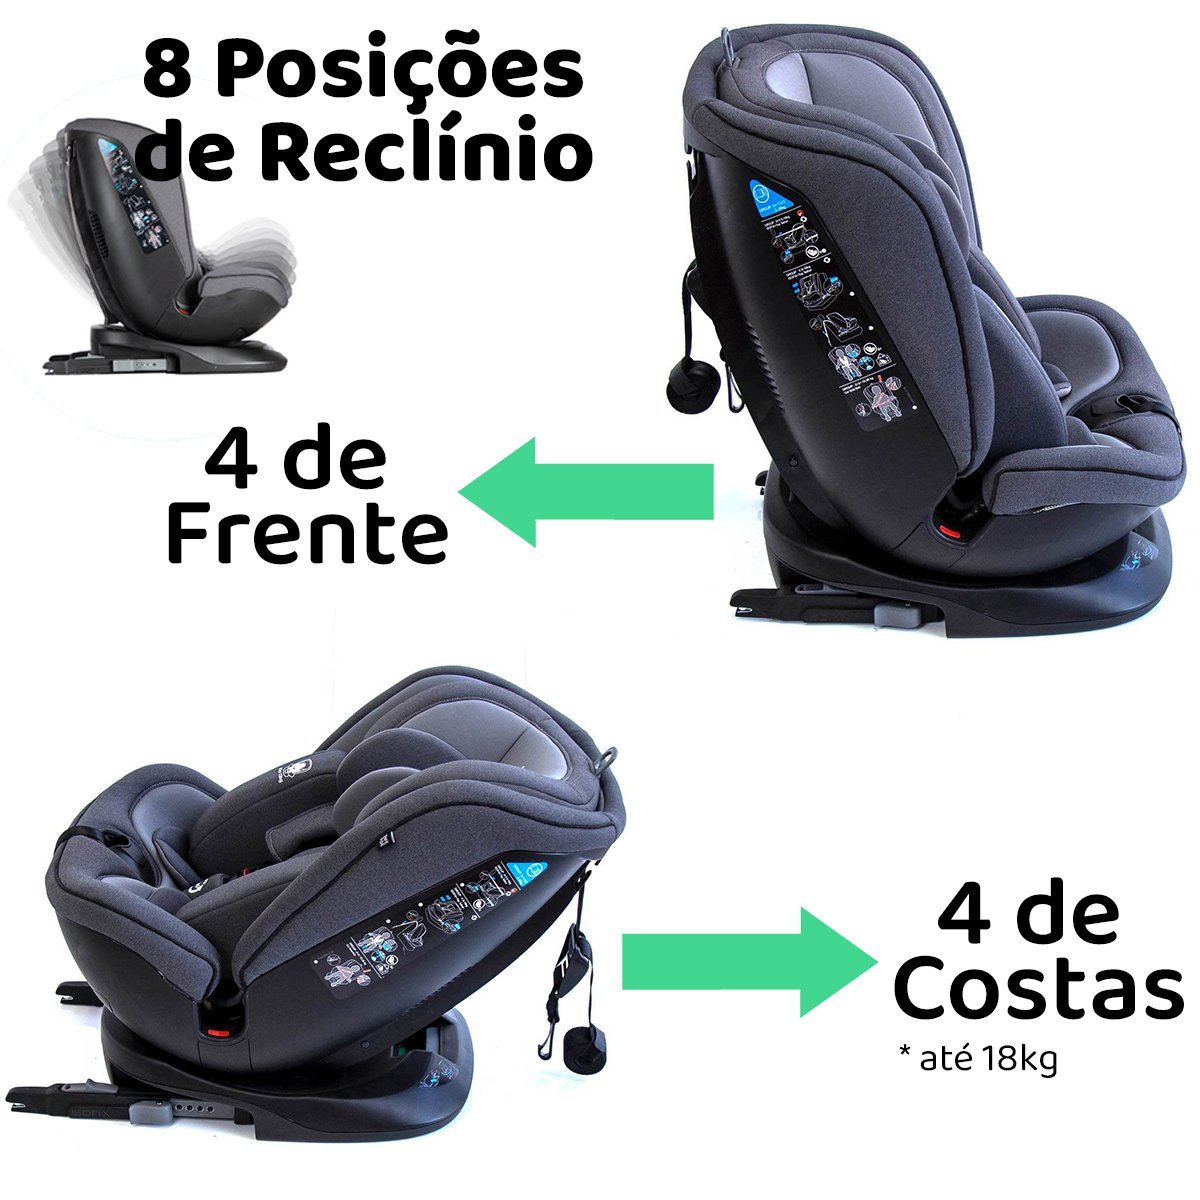 Availand Sureby Cadeira de carro bebé: Grupo 0 / 1/2/3 Rotação 360